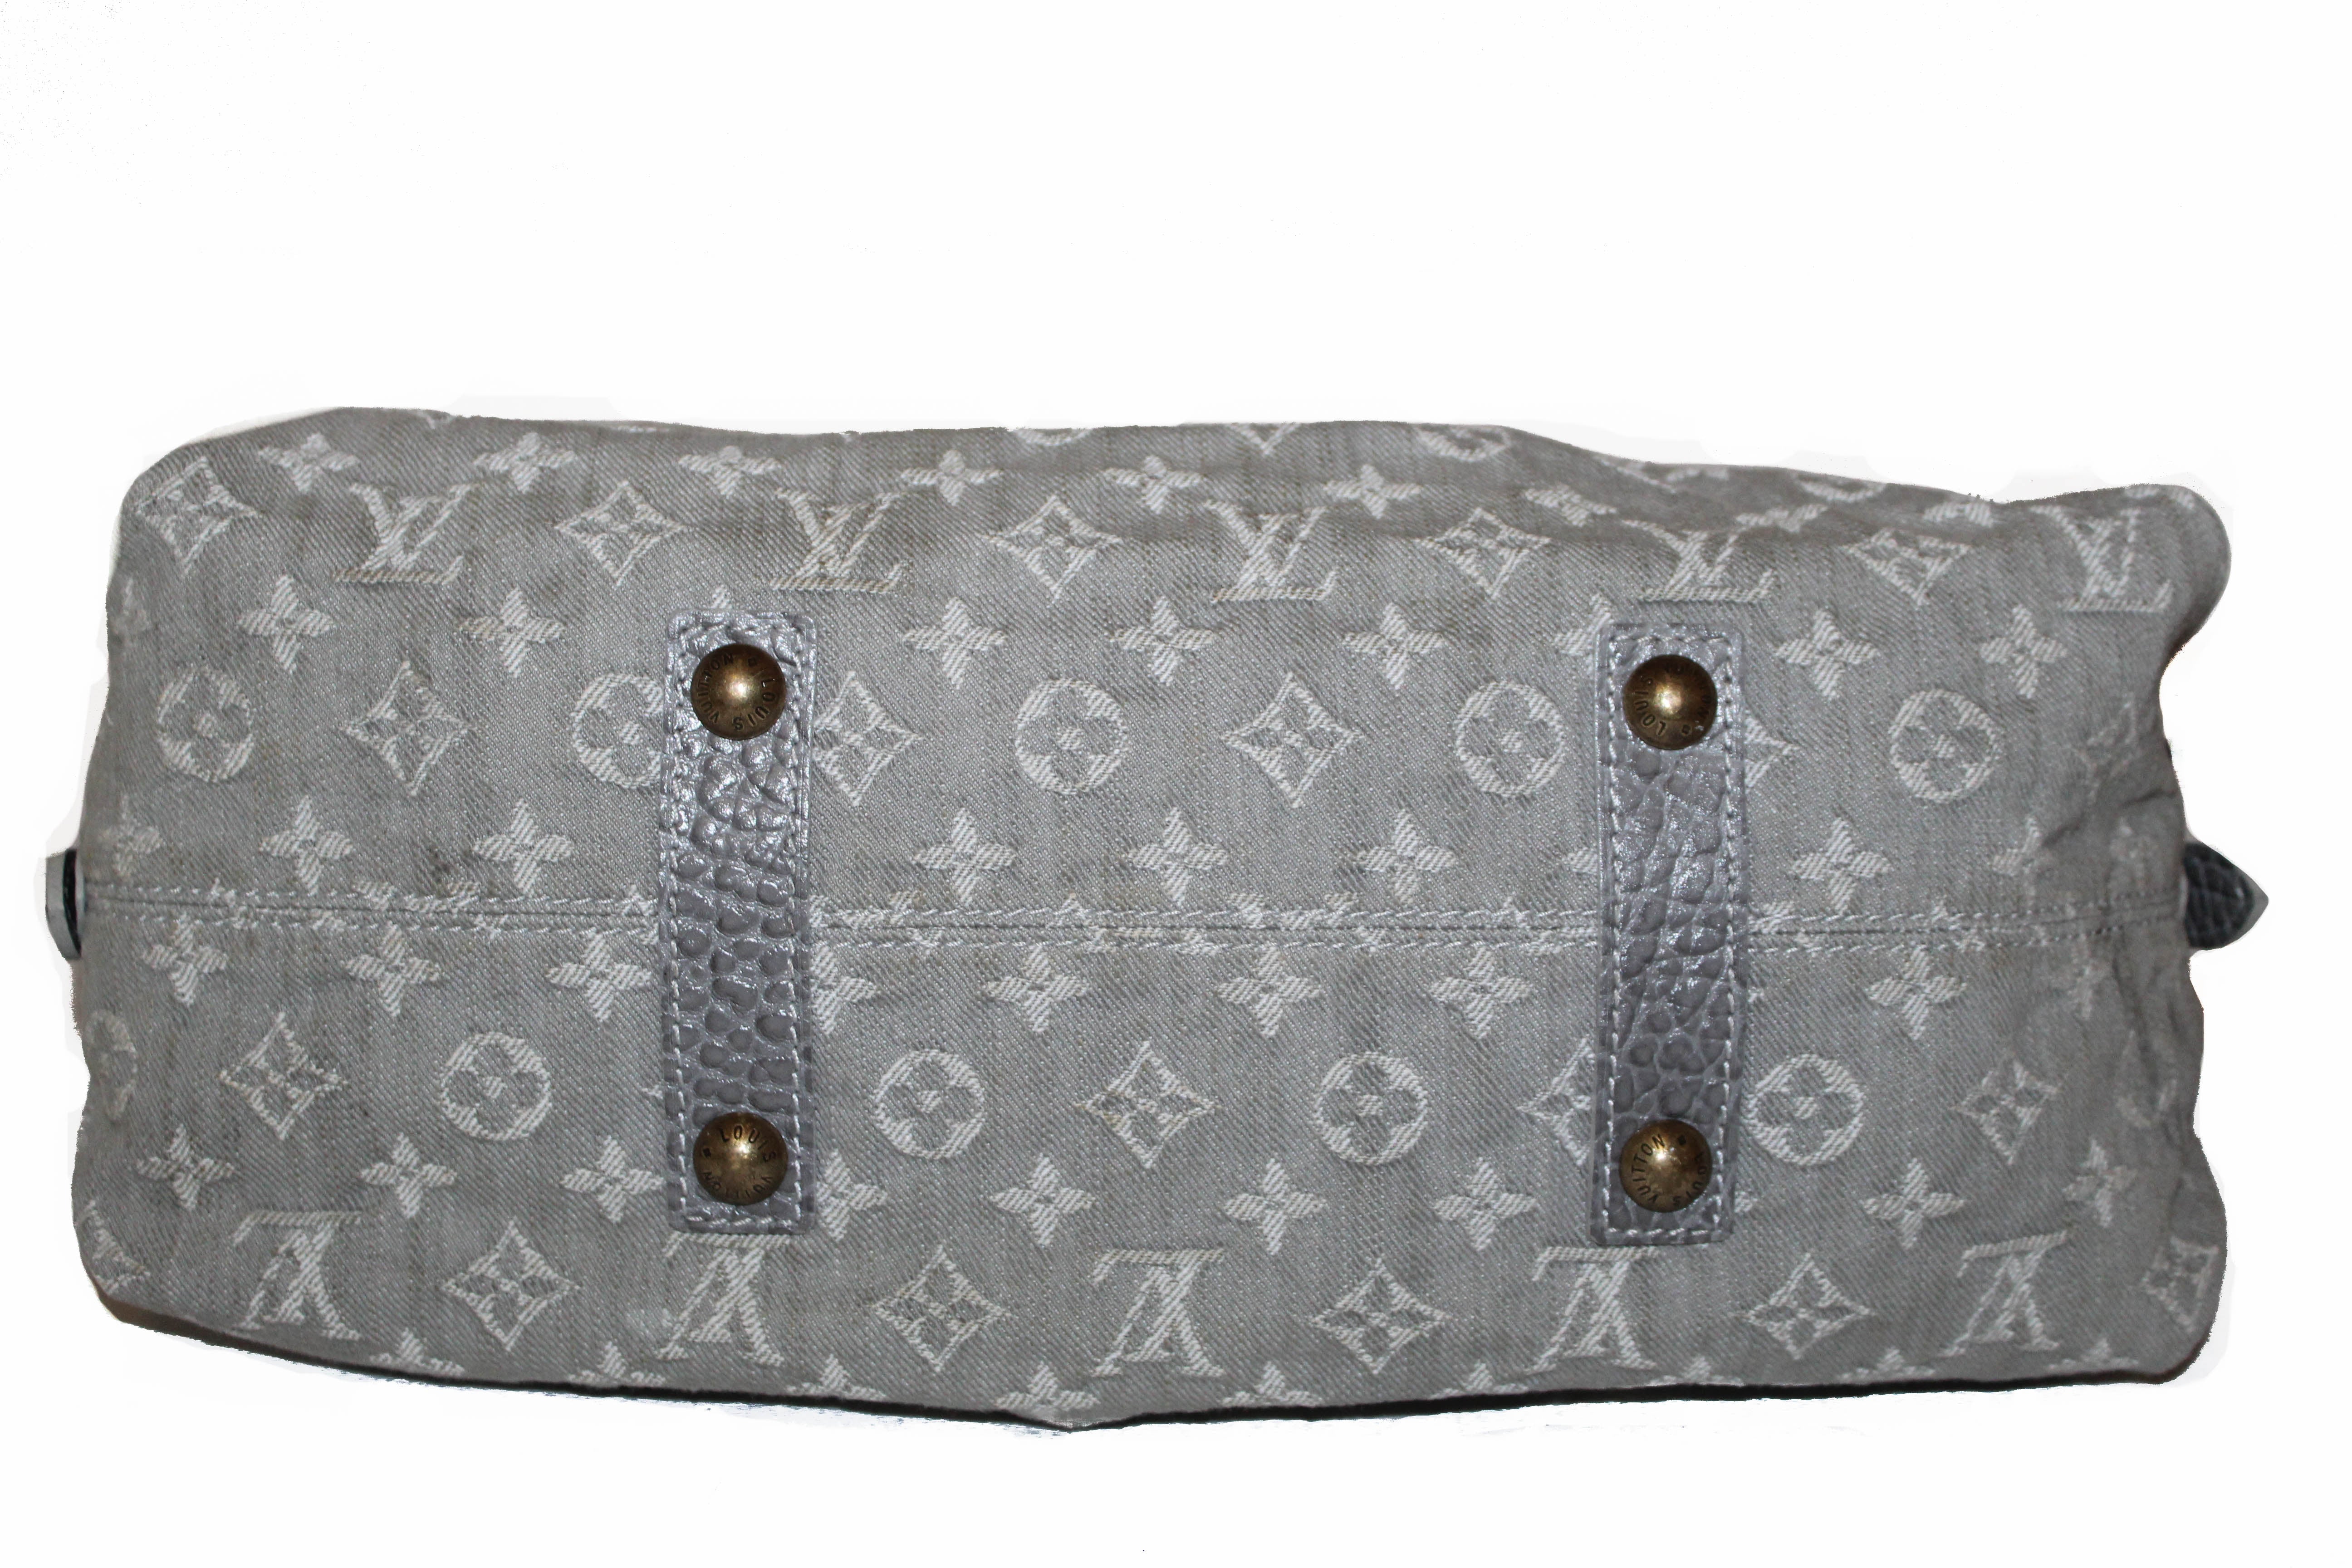 Authentic Louis Vuitton Denim Grey Cabby PM Handbag/Shoulder Bag